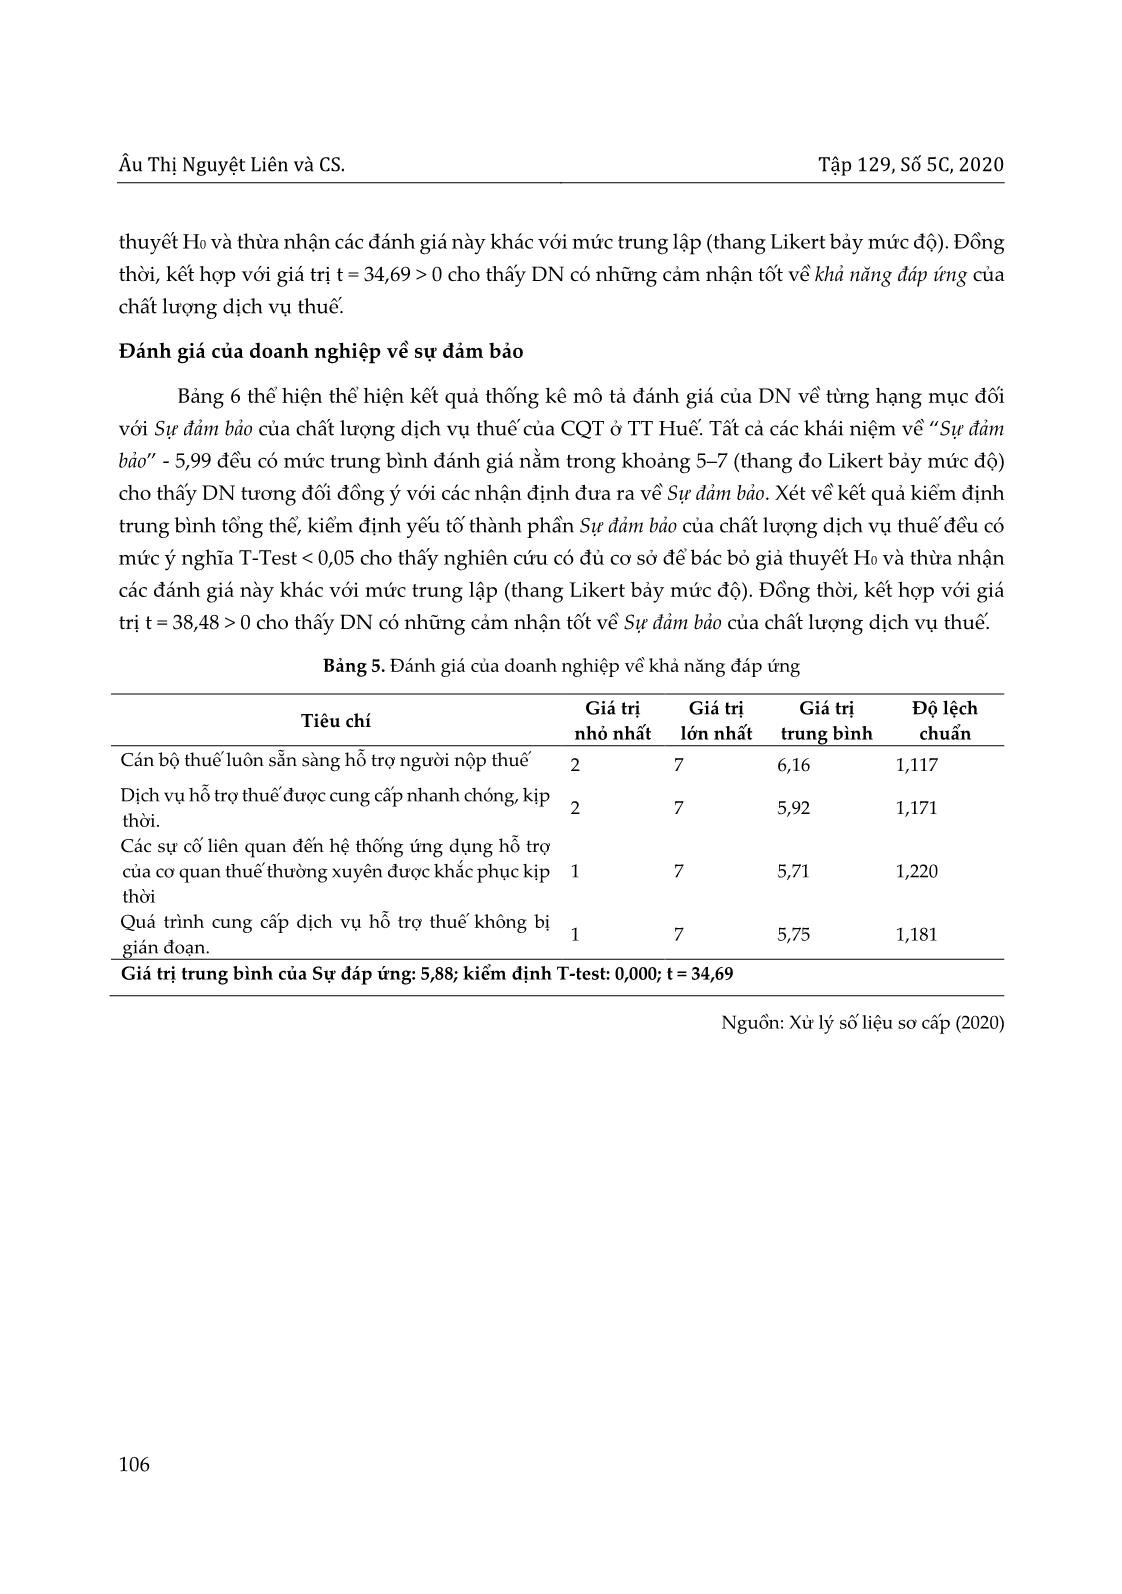 Chất lượng dịch vụ thuế cho doanh nghiệp: Trường hợp nghiên cứu tại Thừa Thiên Huế trang 10